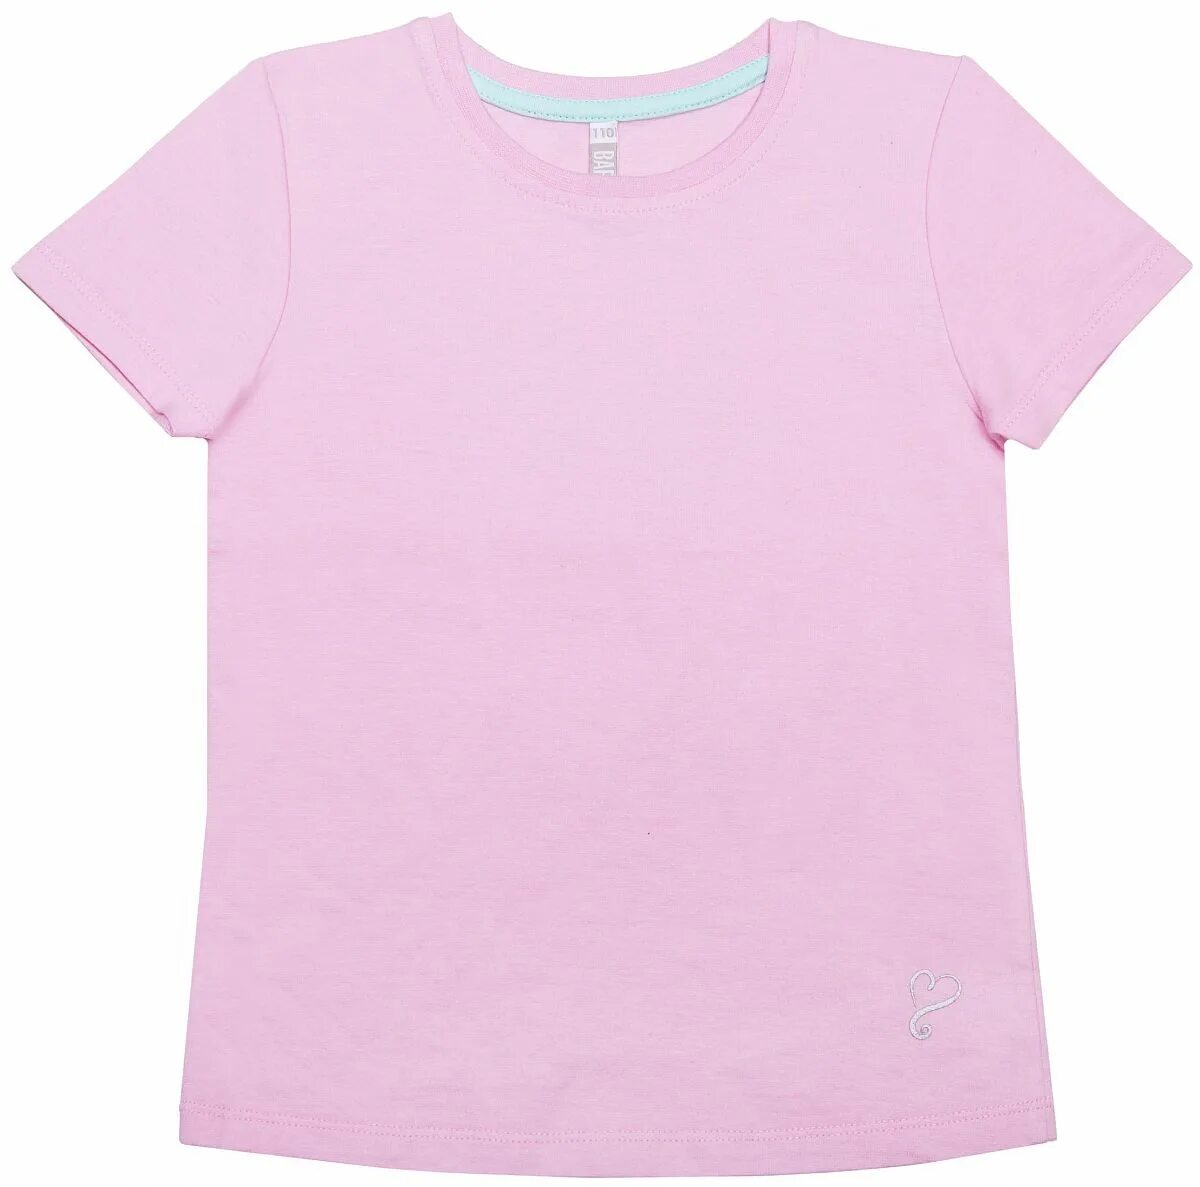 Розовая футболка для девочки. Футболка для девочки Barkito «Flamingo. Футболка для девочки розовая. Футболки с короткими рукавами для девочек. Майка для девочек розовая.